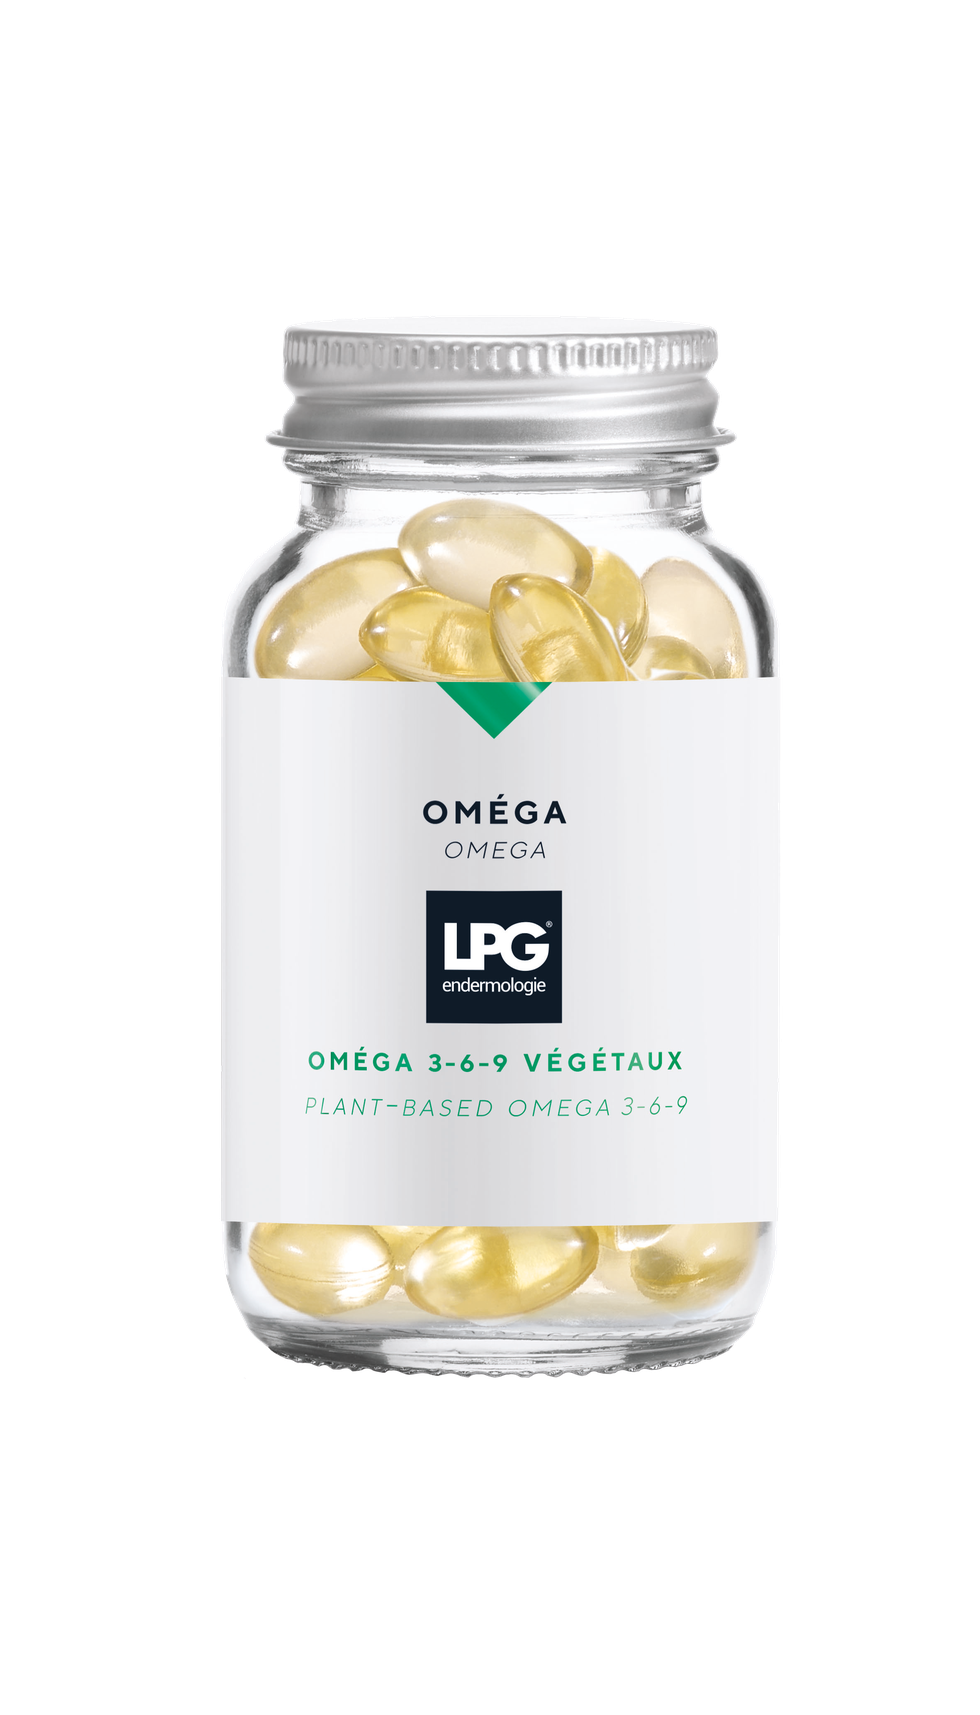 oméga, de lpg concentrado de omega3, 6 y 9